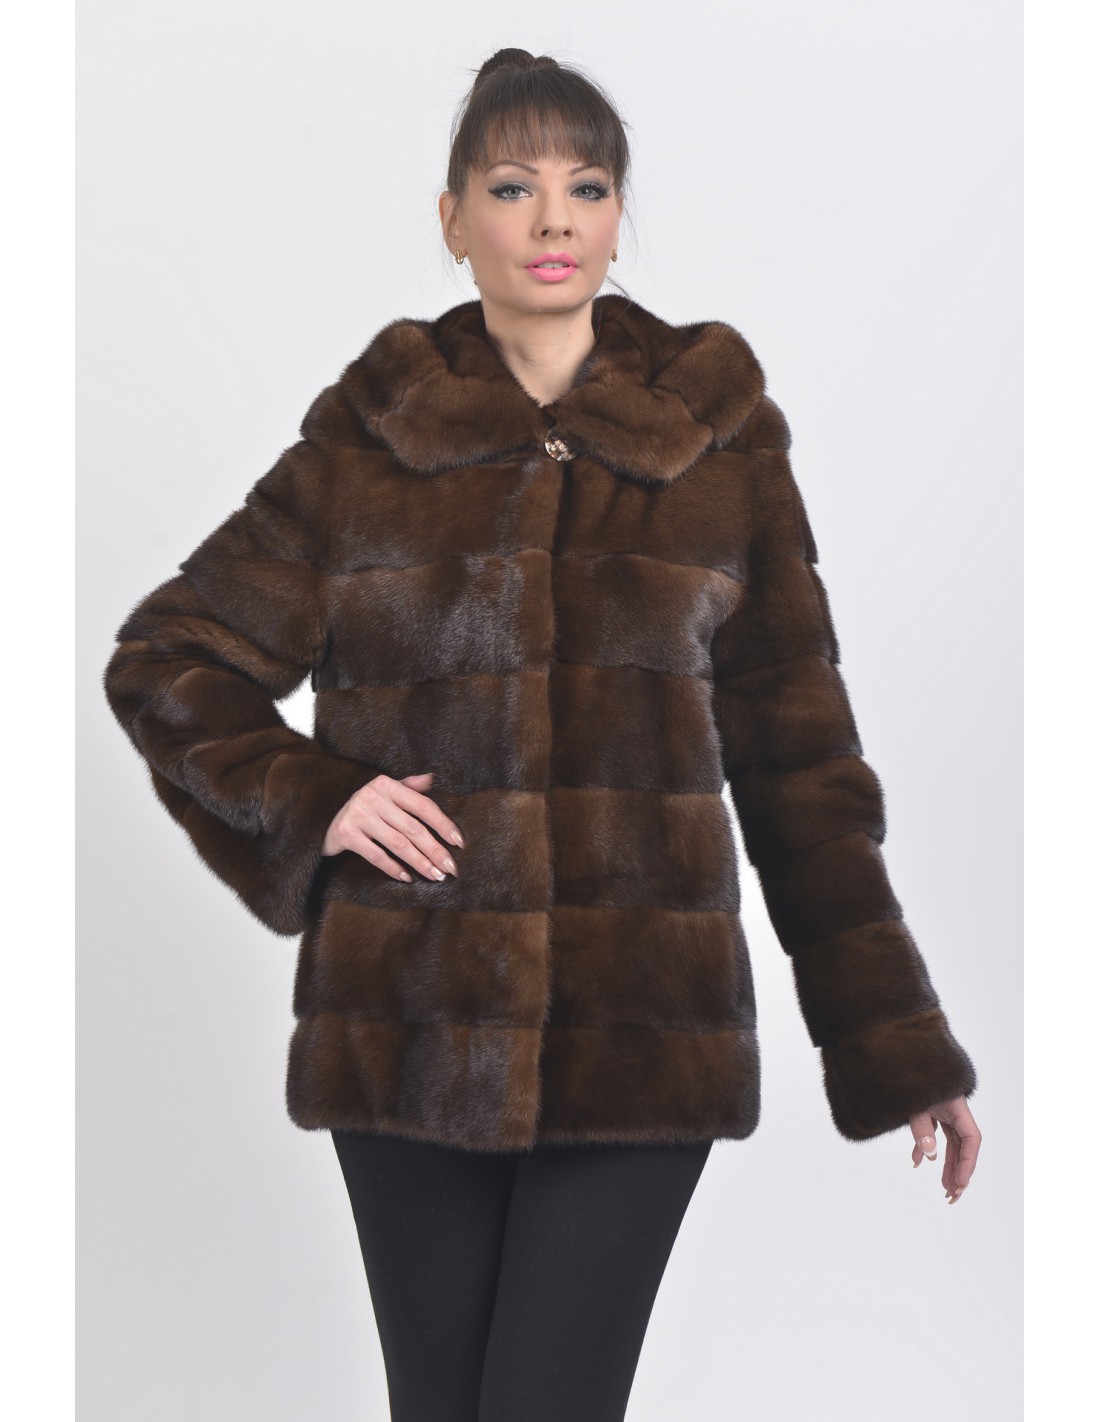 Brown mink jacket with hood - SaintGermain Furs